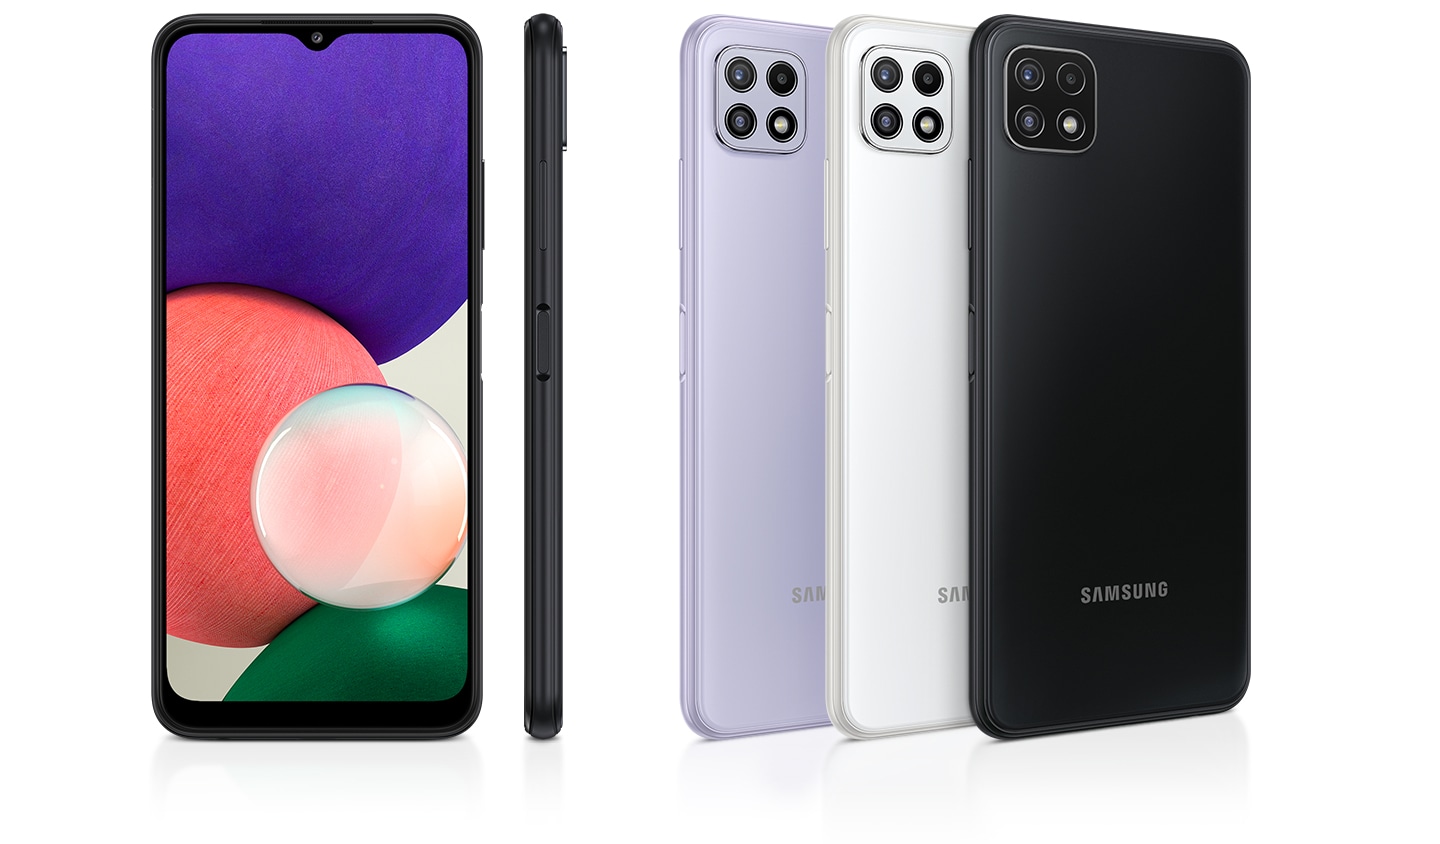 Es gibt eine Hochglanz-Rückansicht von 4 Smartphones in den Farben Grey, White und Violet sowie eine Profil- und Frontansicht, die die hochwertige Hochglanzoberfläche hervorheben.